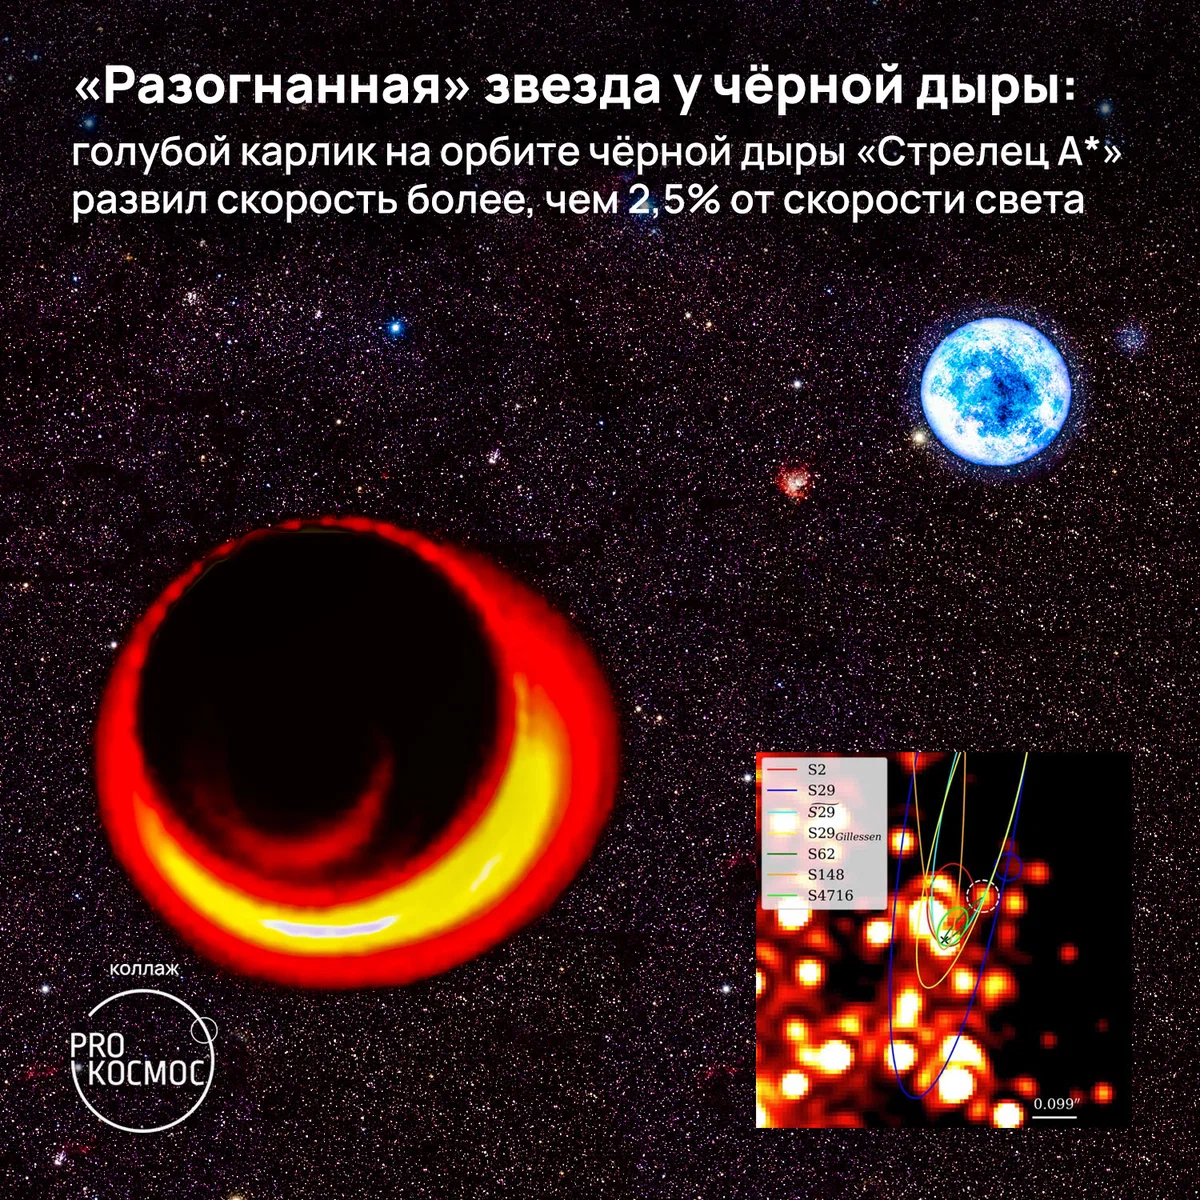 «Разогнанная» звезда у чёрной дыры: голубой карлик на орбите чёрной дыры «Стрелец A*» развил скорость более, чем 2,5% от скорости света⁠⁠ height=1200px width=1200px